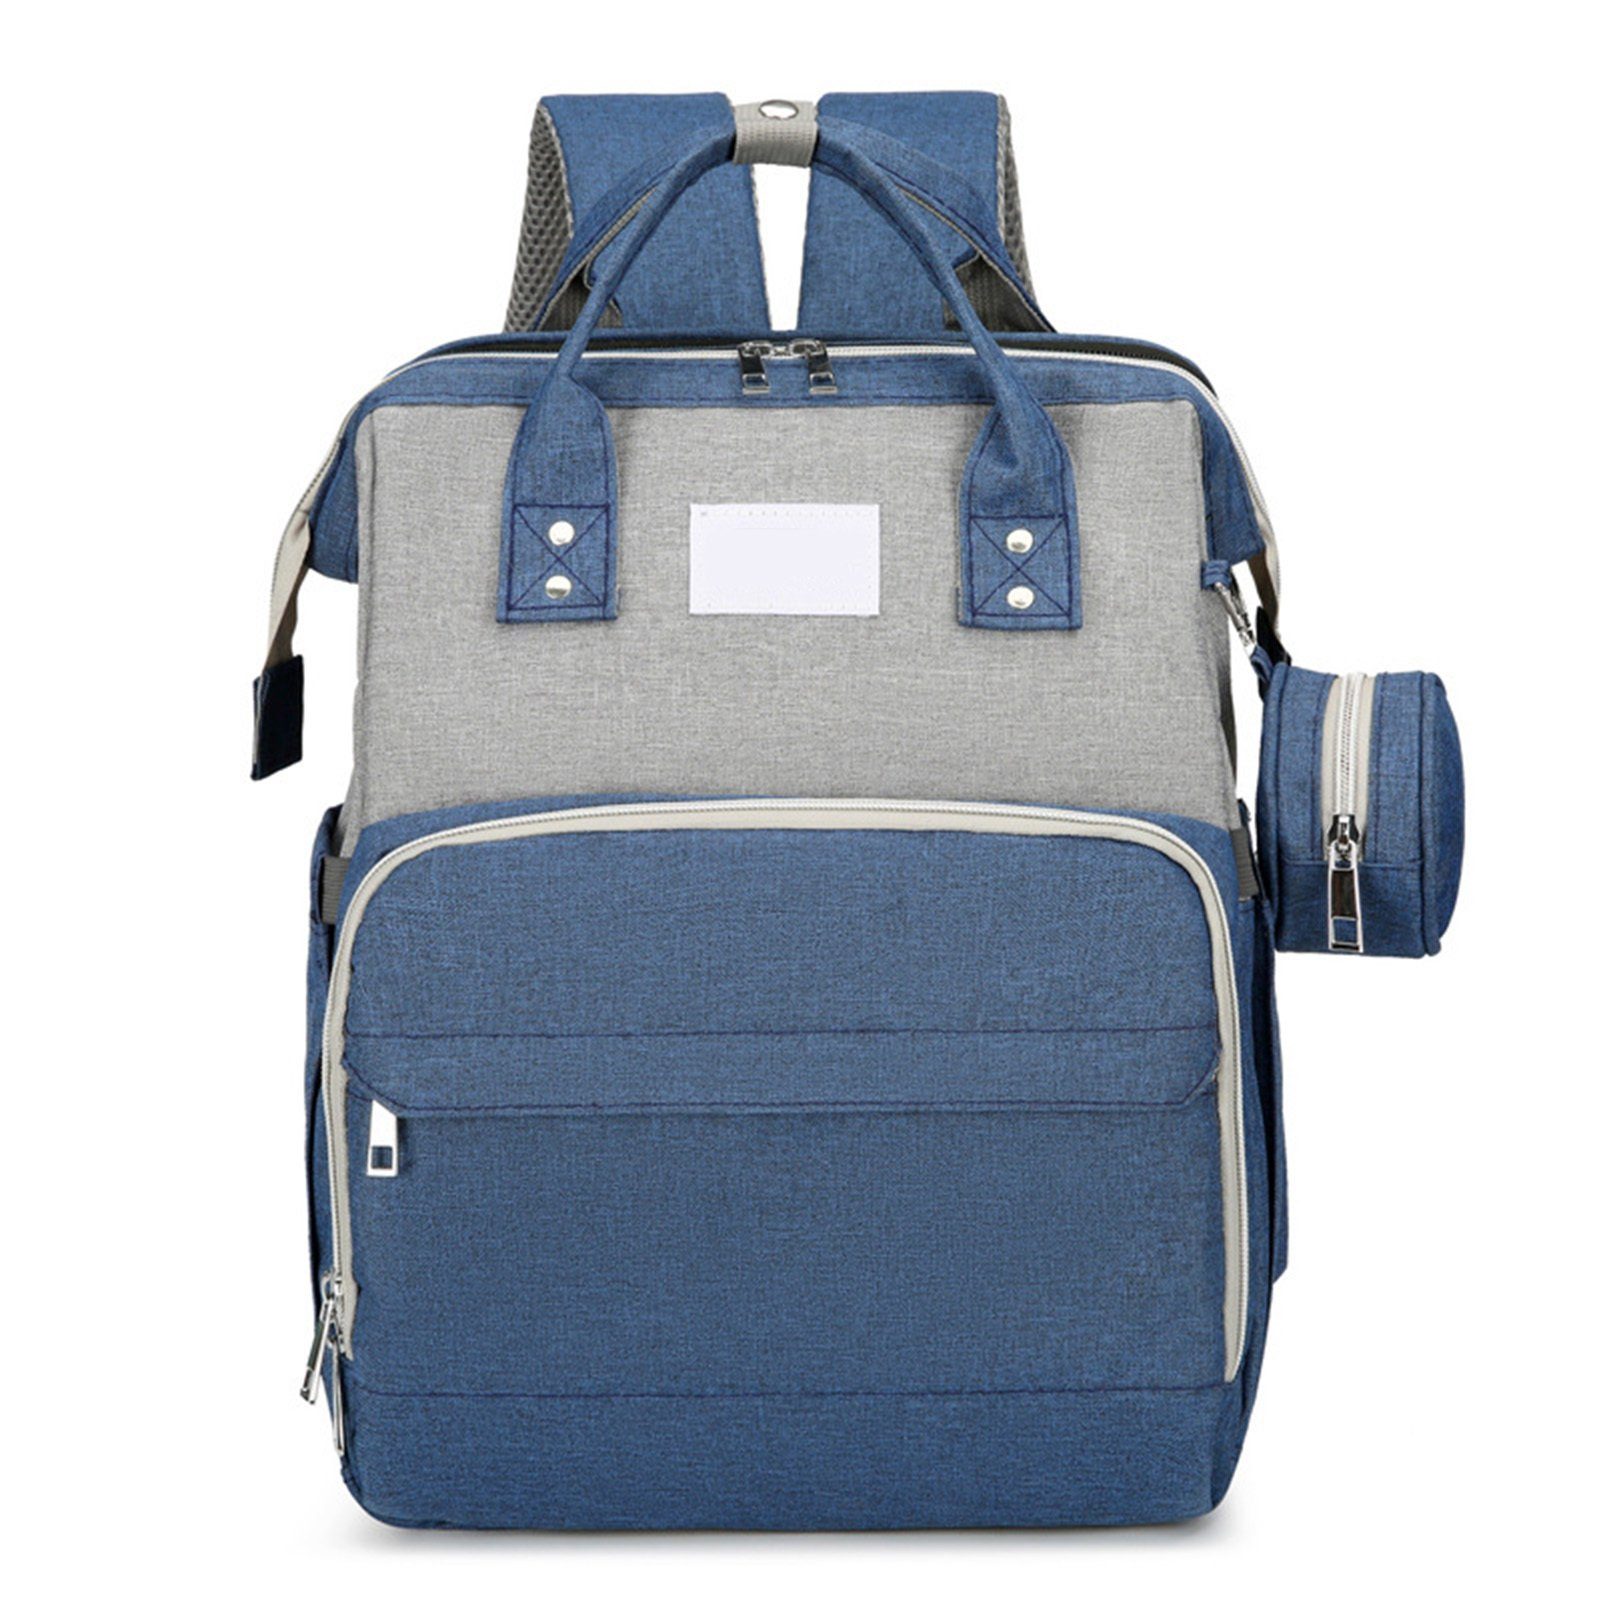 Blusmart Wickeltasche Tragbare Wickeltasche Mit Reißverschluss, Mehrzweck-Mutterrucksack blue grey